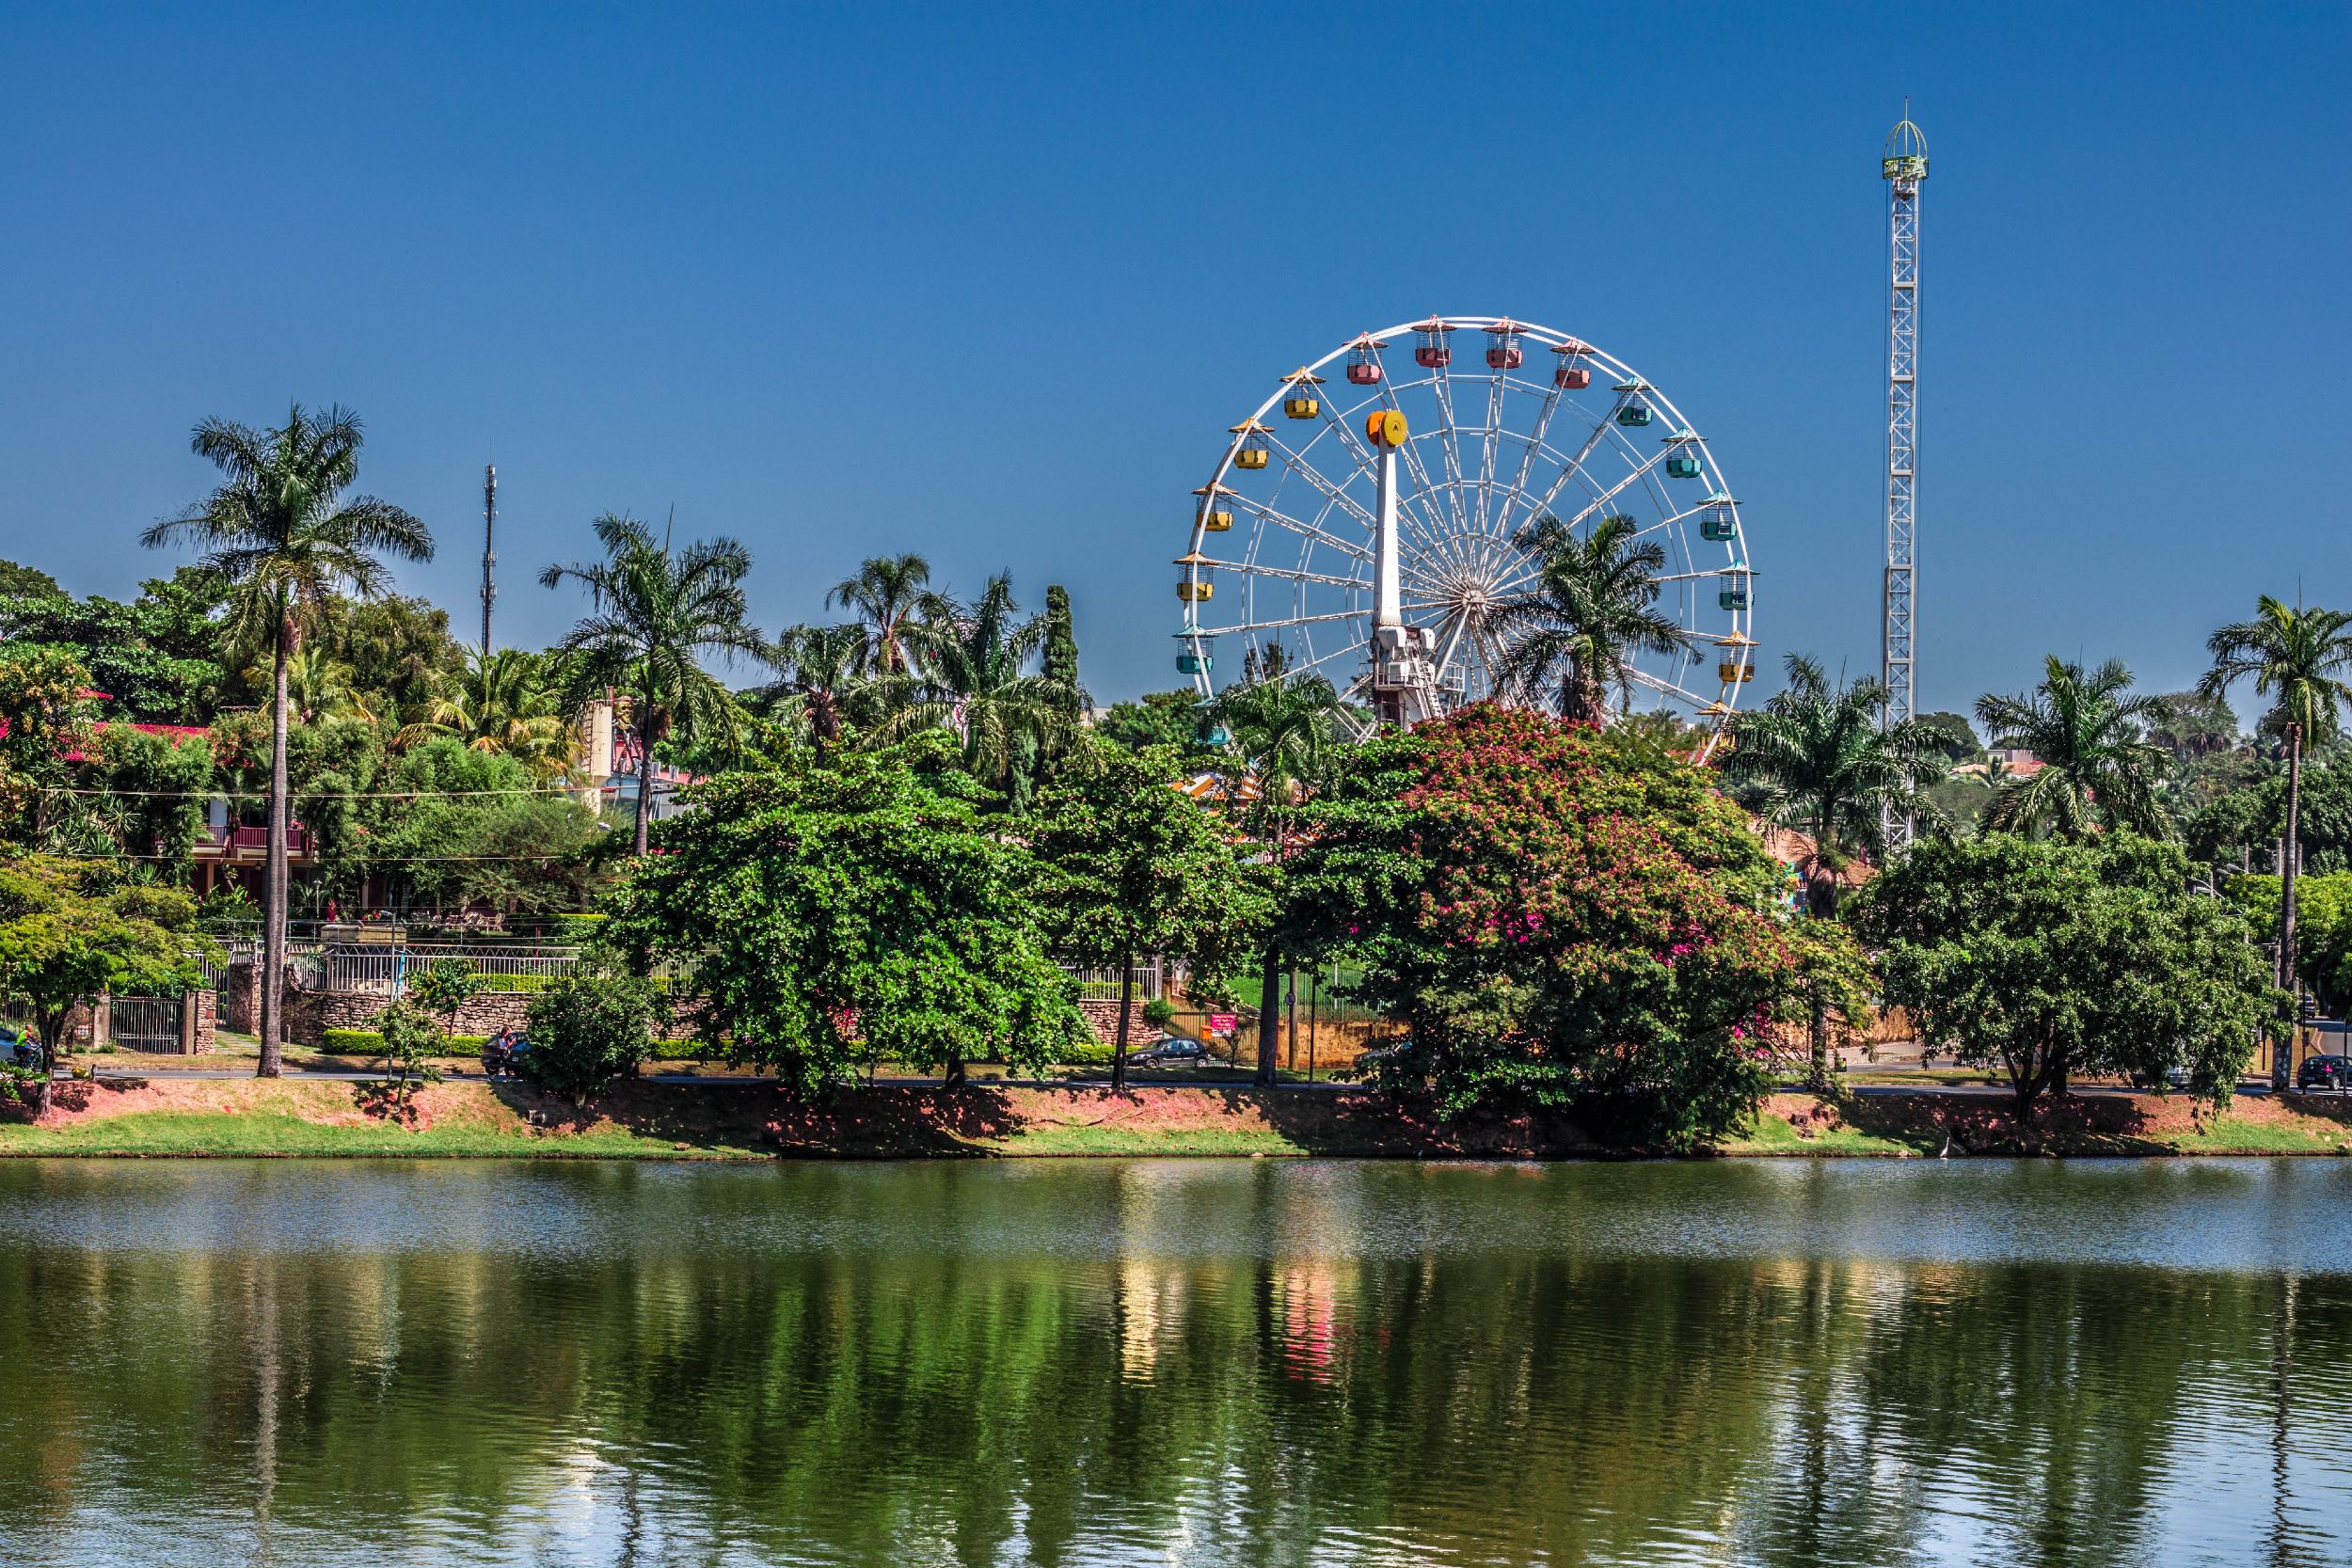 Atrações do Parque Guanabara compõem a vista da Lagoa da Pampulha